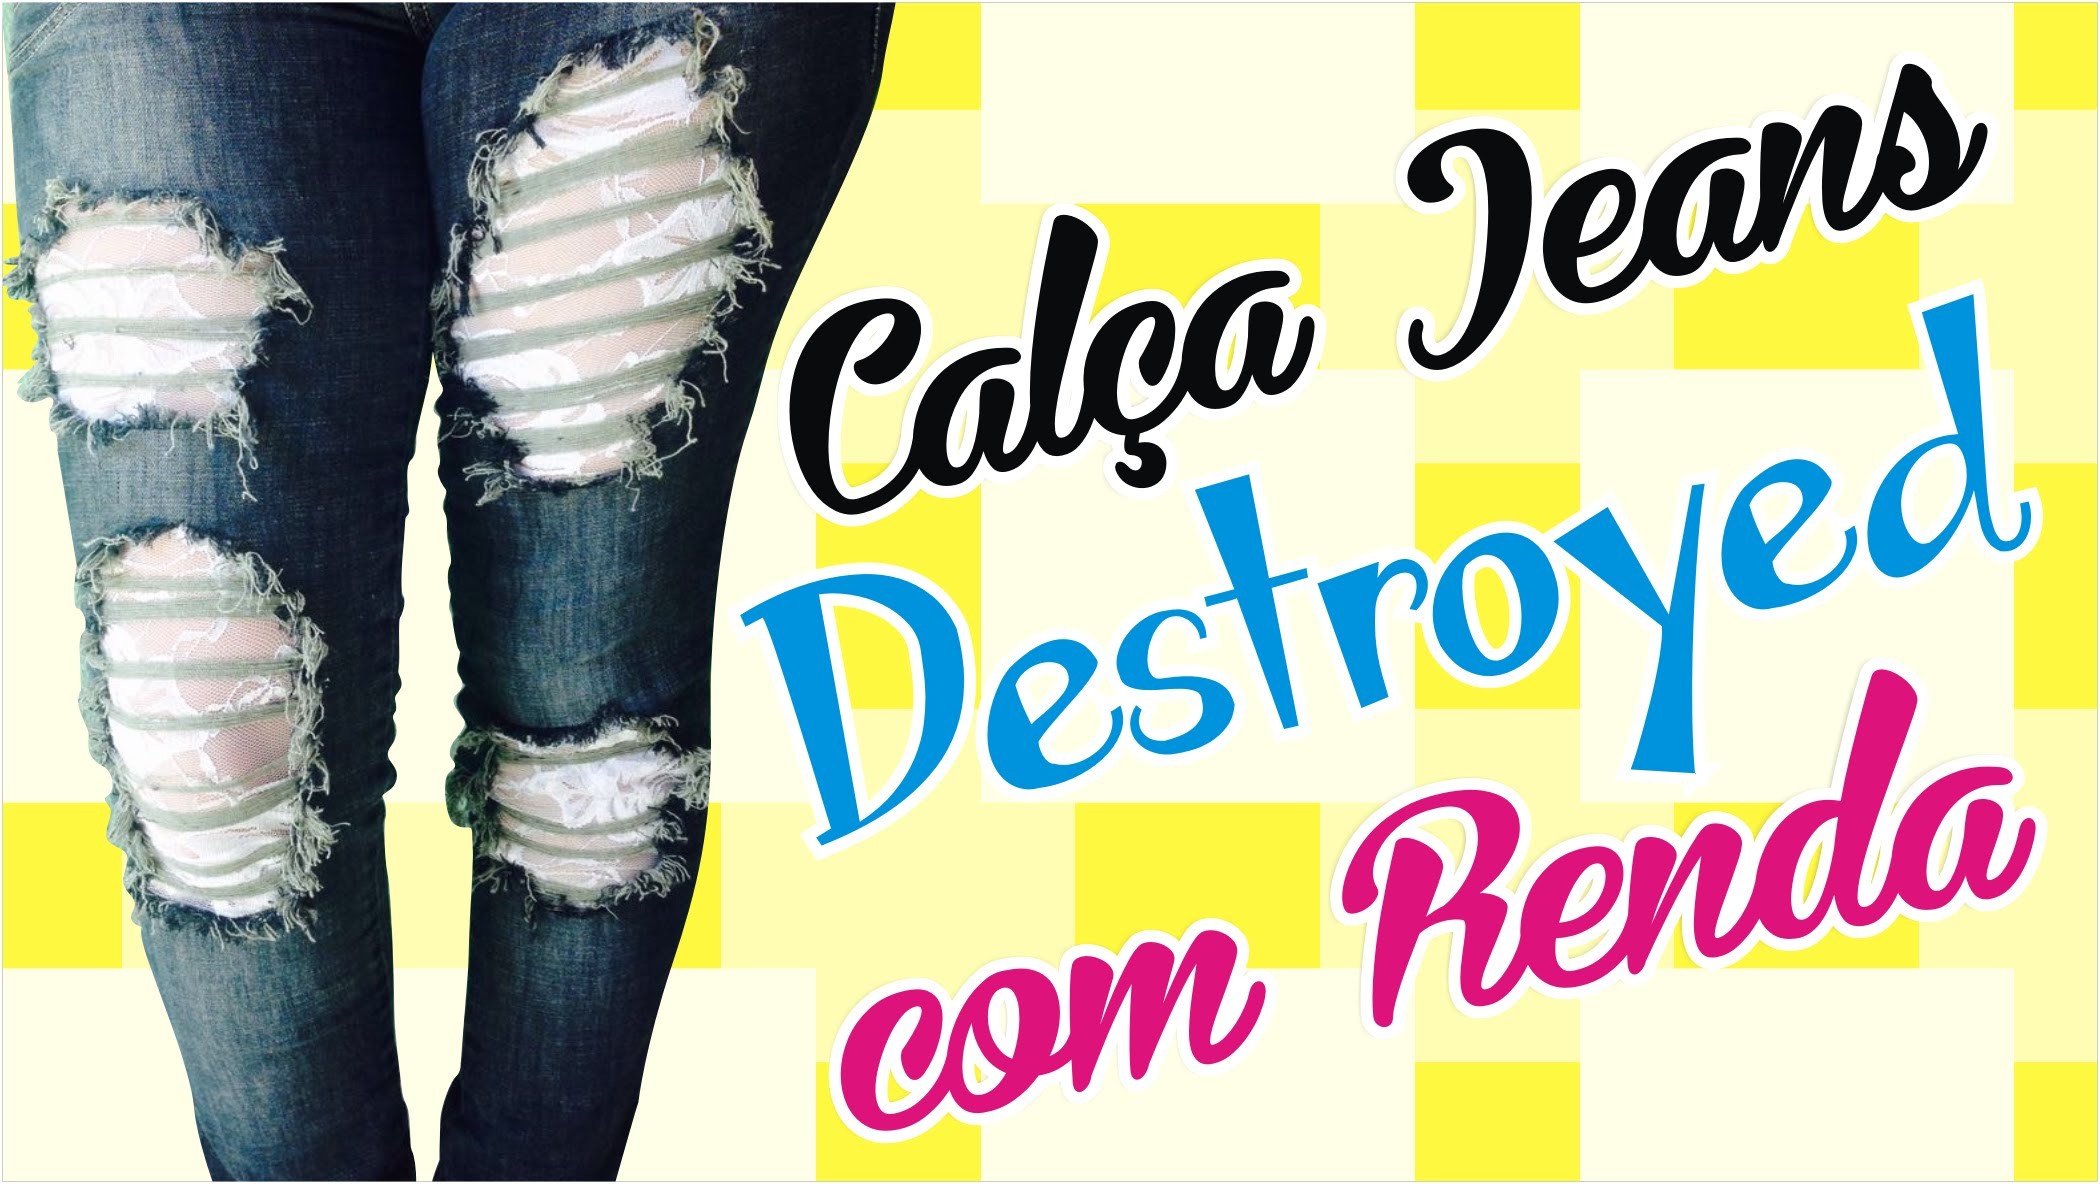 DIY - Customização de calça FÁCIL - Como fazer Destroyed jeans com Renda